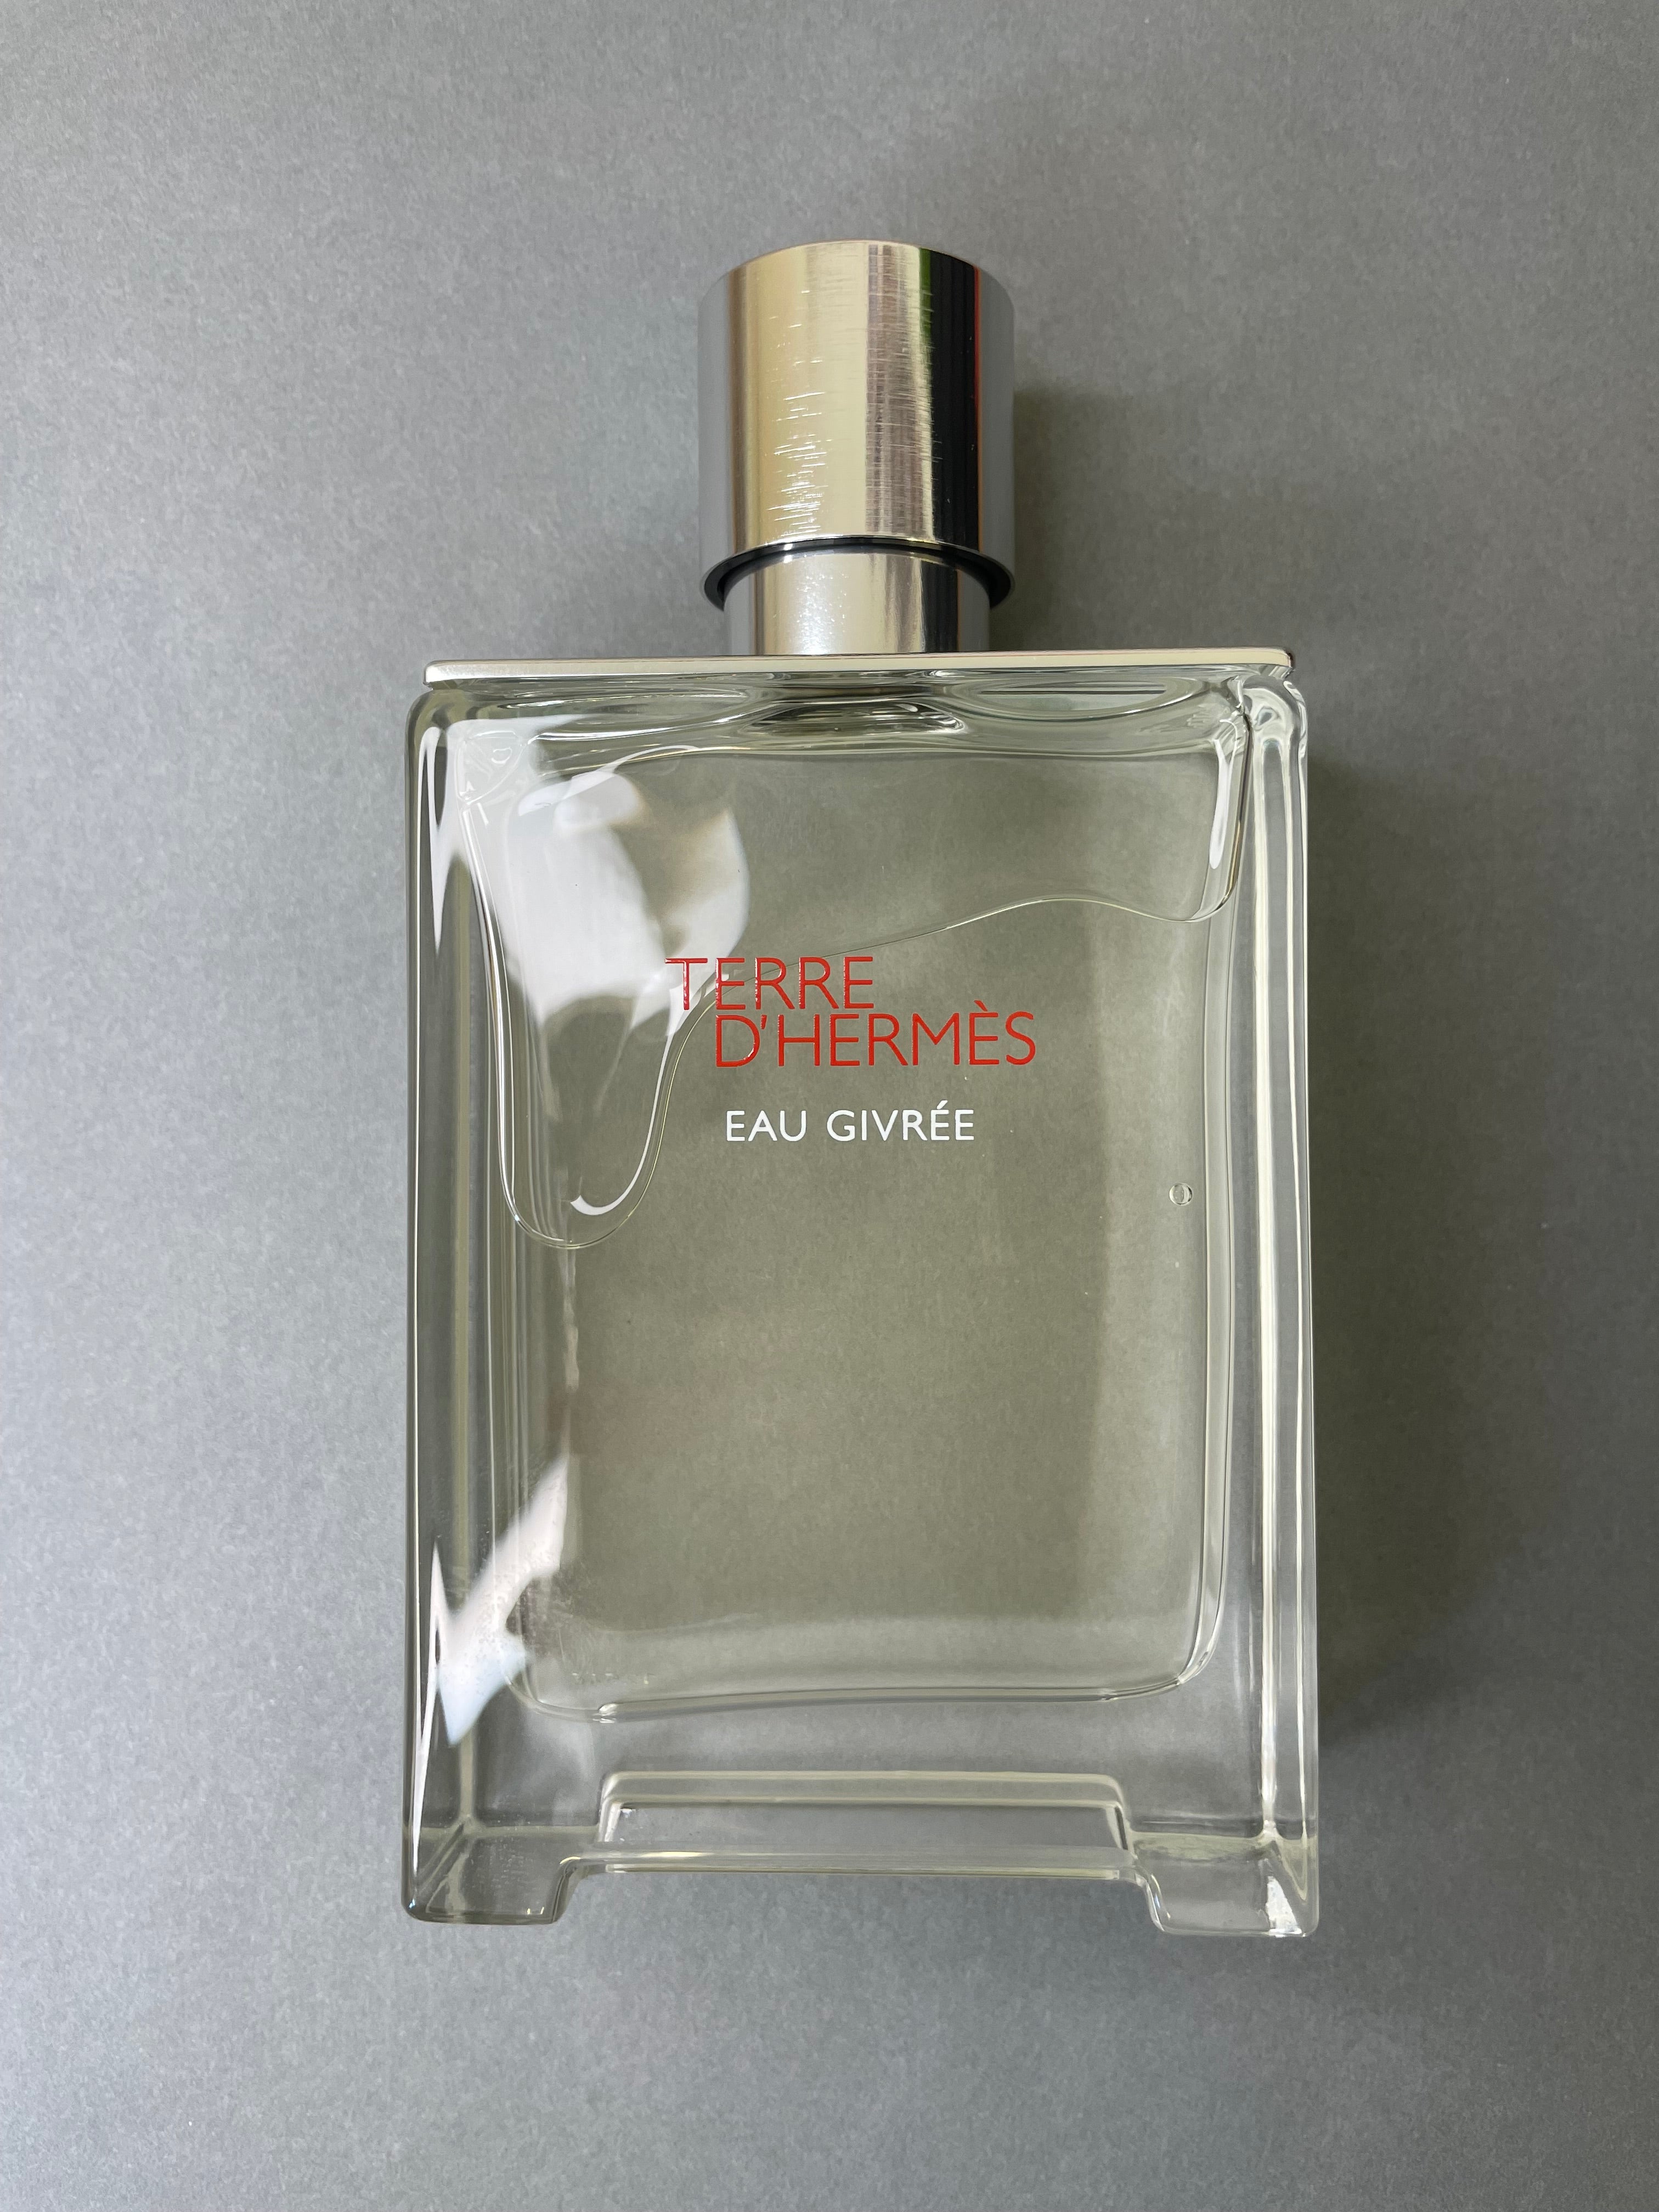 Hermes Terre d'Hermes Eau Givrée – Fragrance Samples UK